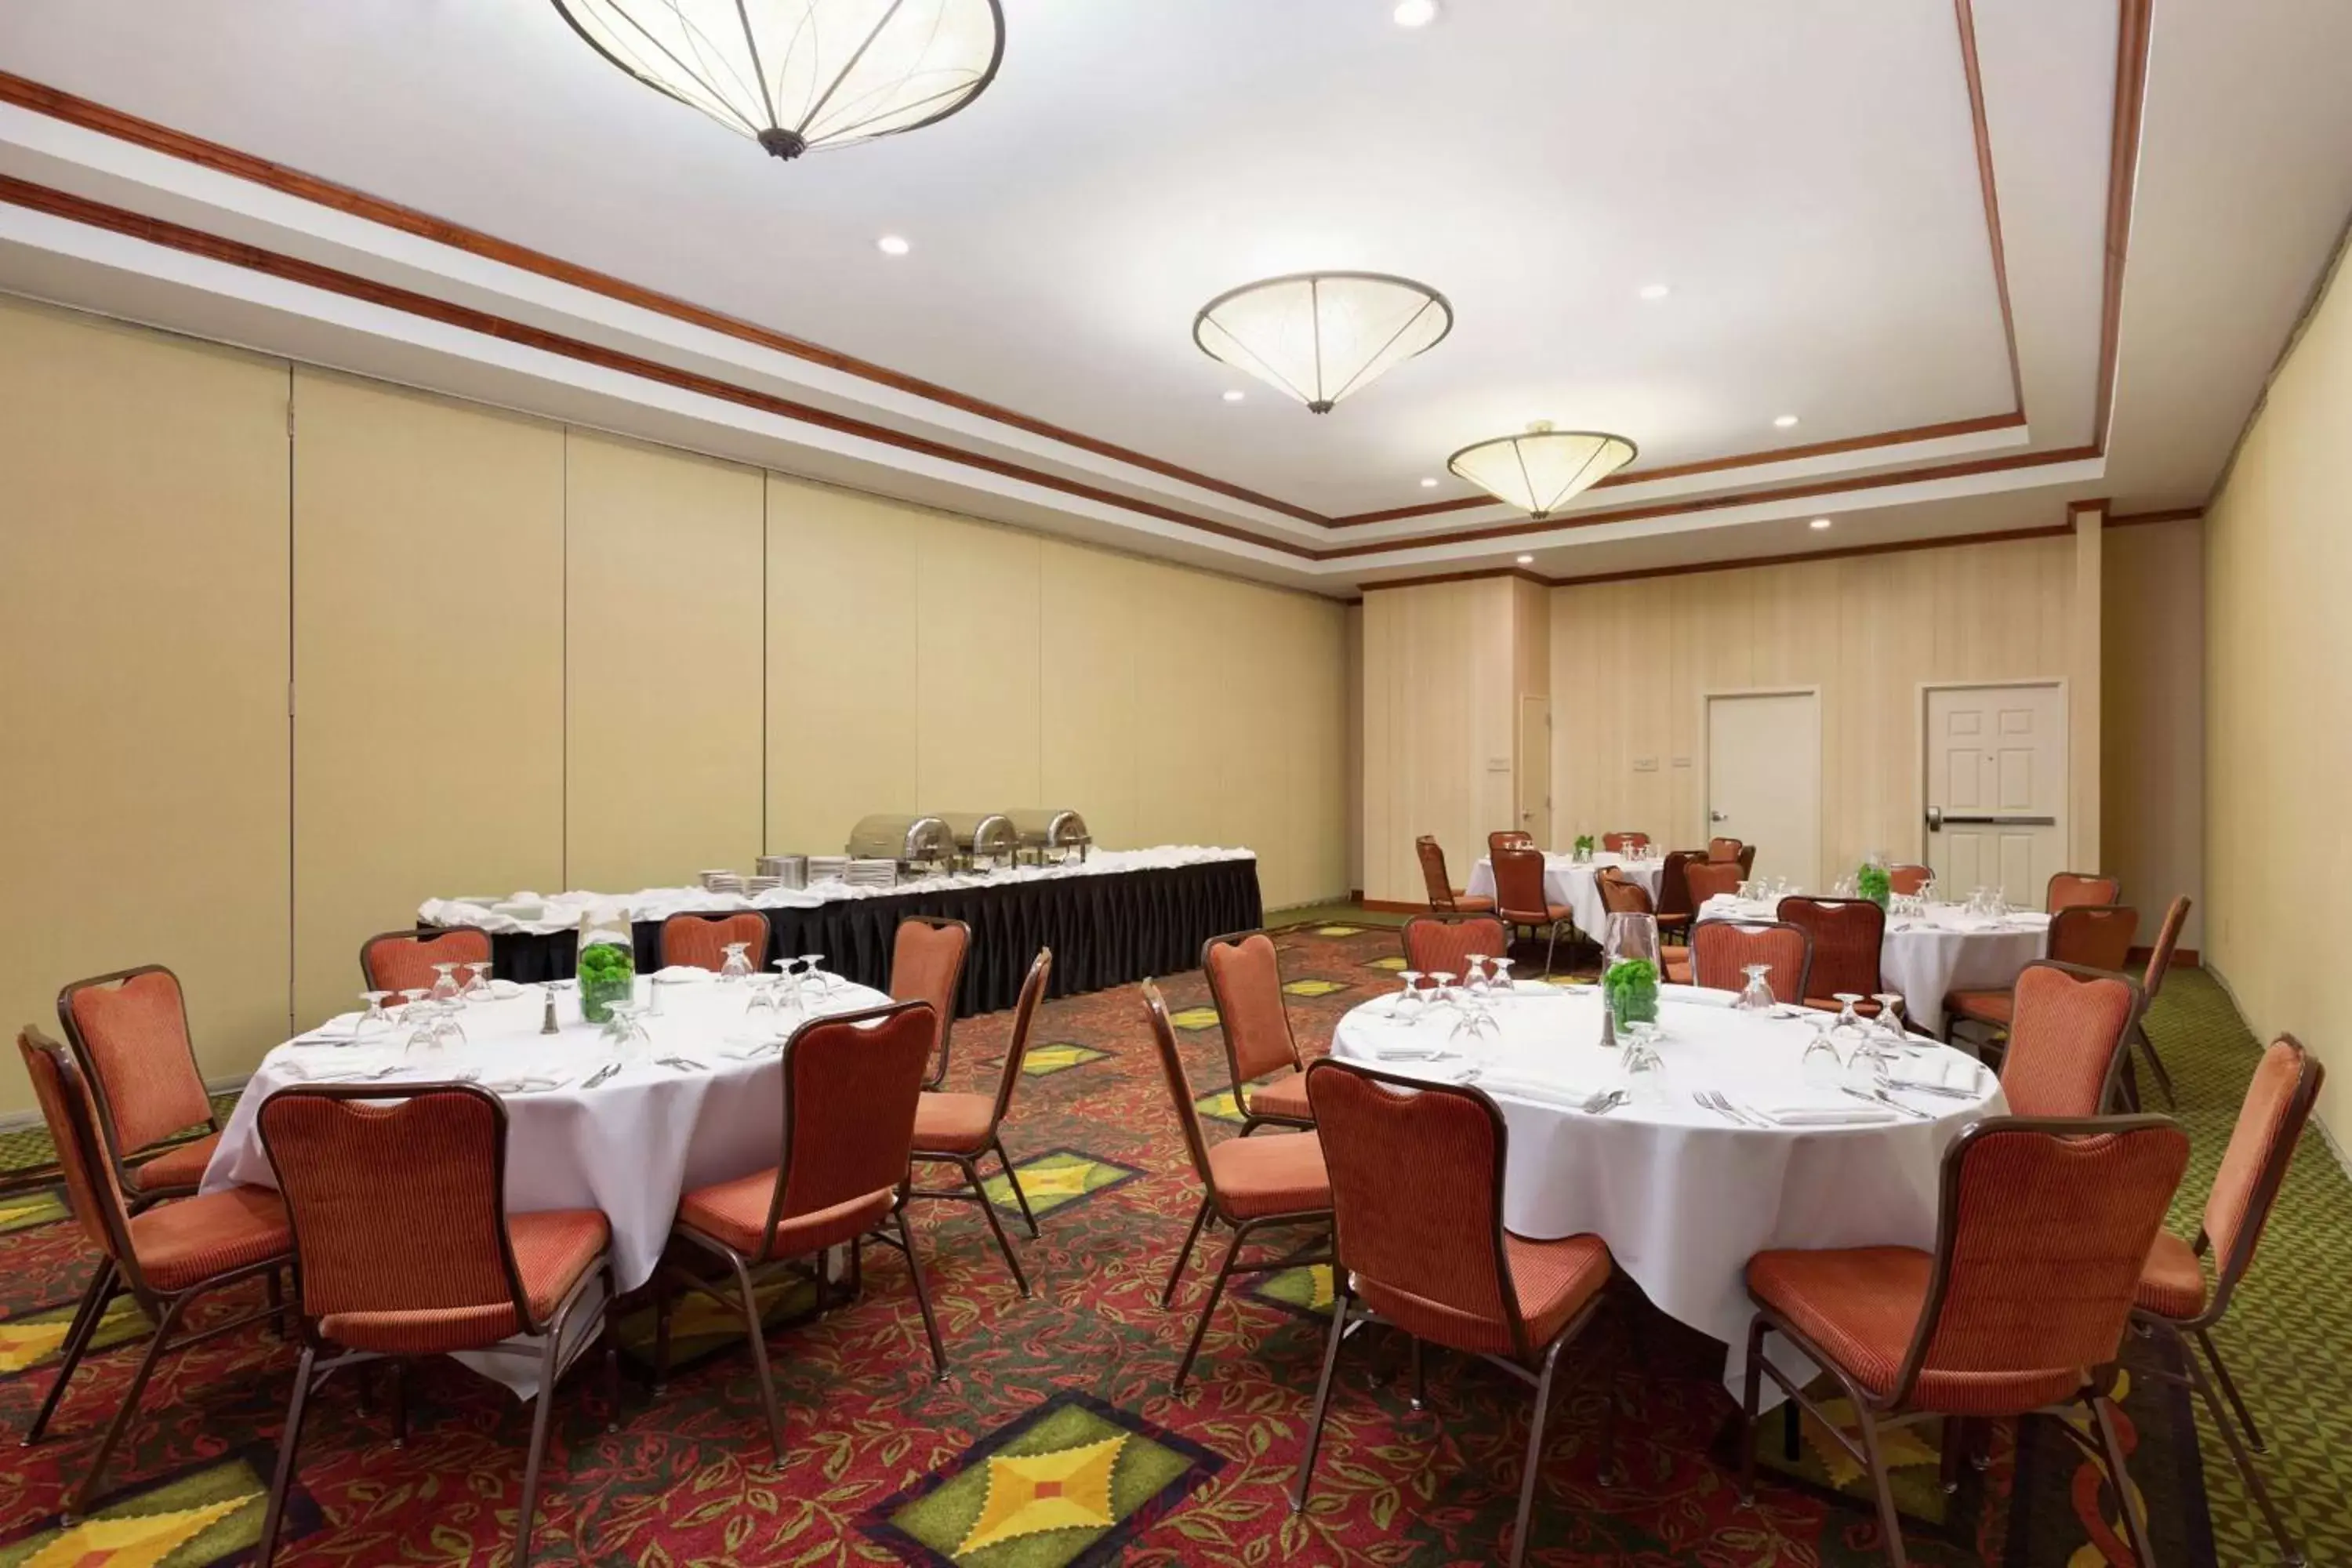 Meeting/conference room, Restaurant/Places to Eat in Hilton Garden Inn Shreveport